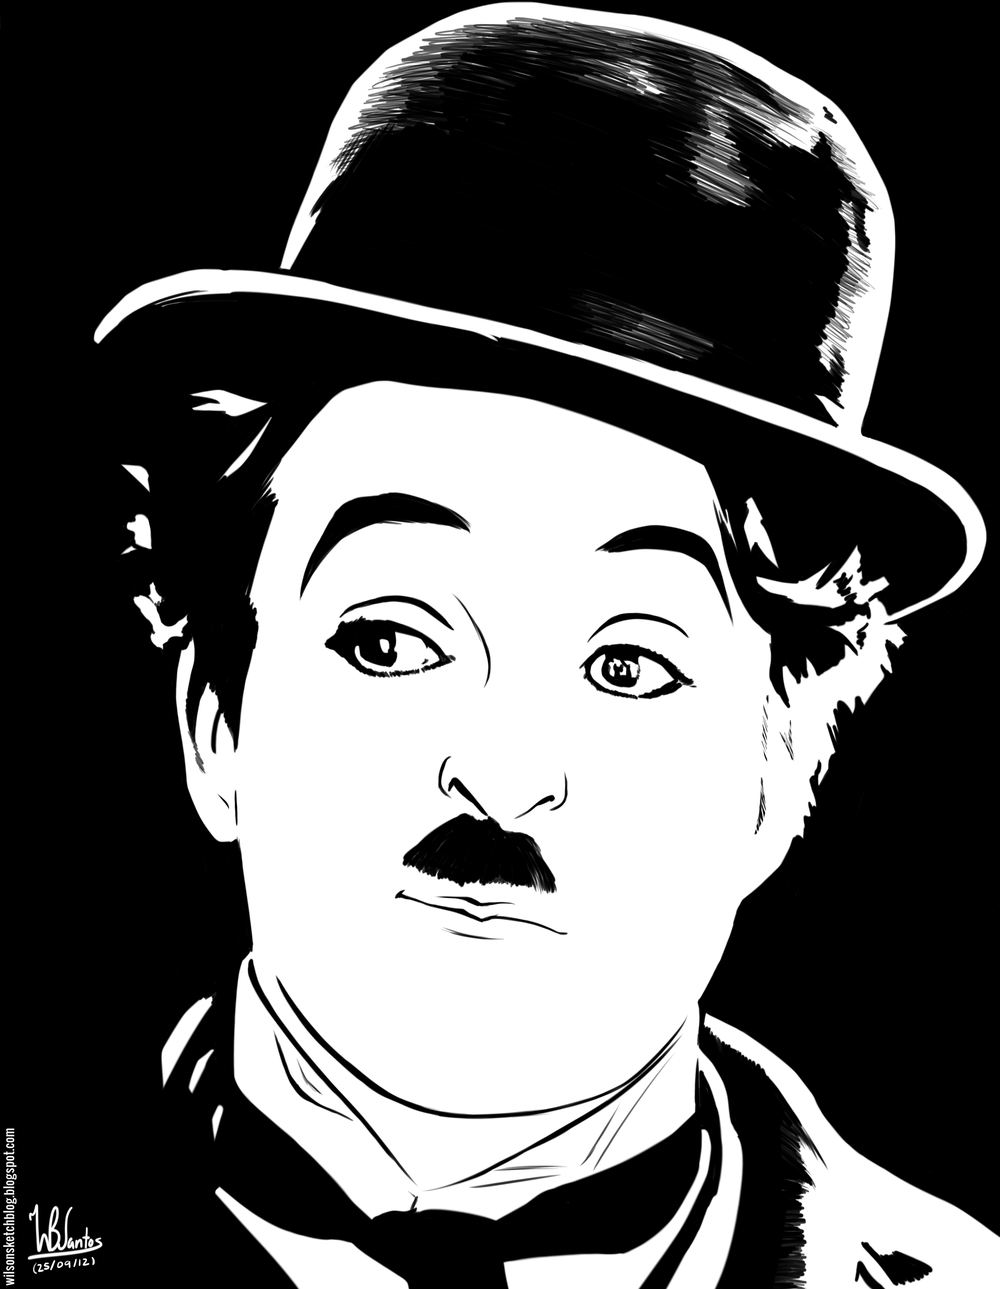 Неповторимая силуэт Чарли Чаплина - воплощение утонченной элегантности и изумительной экспрессии движений